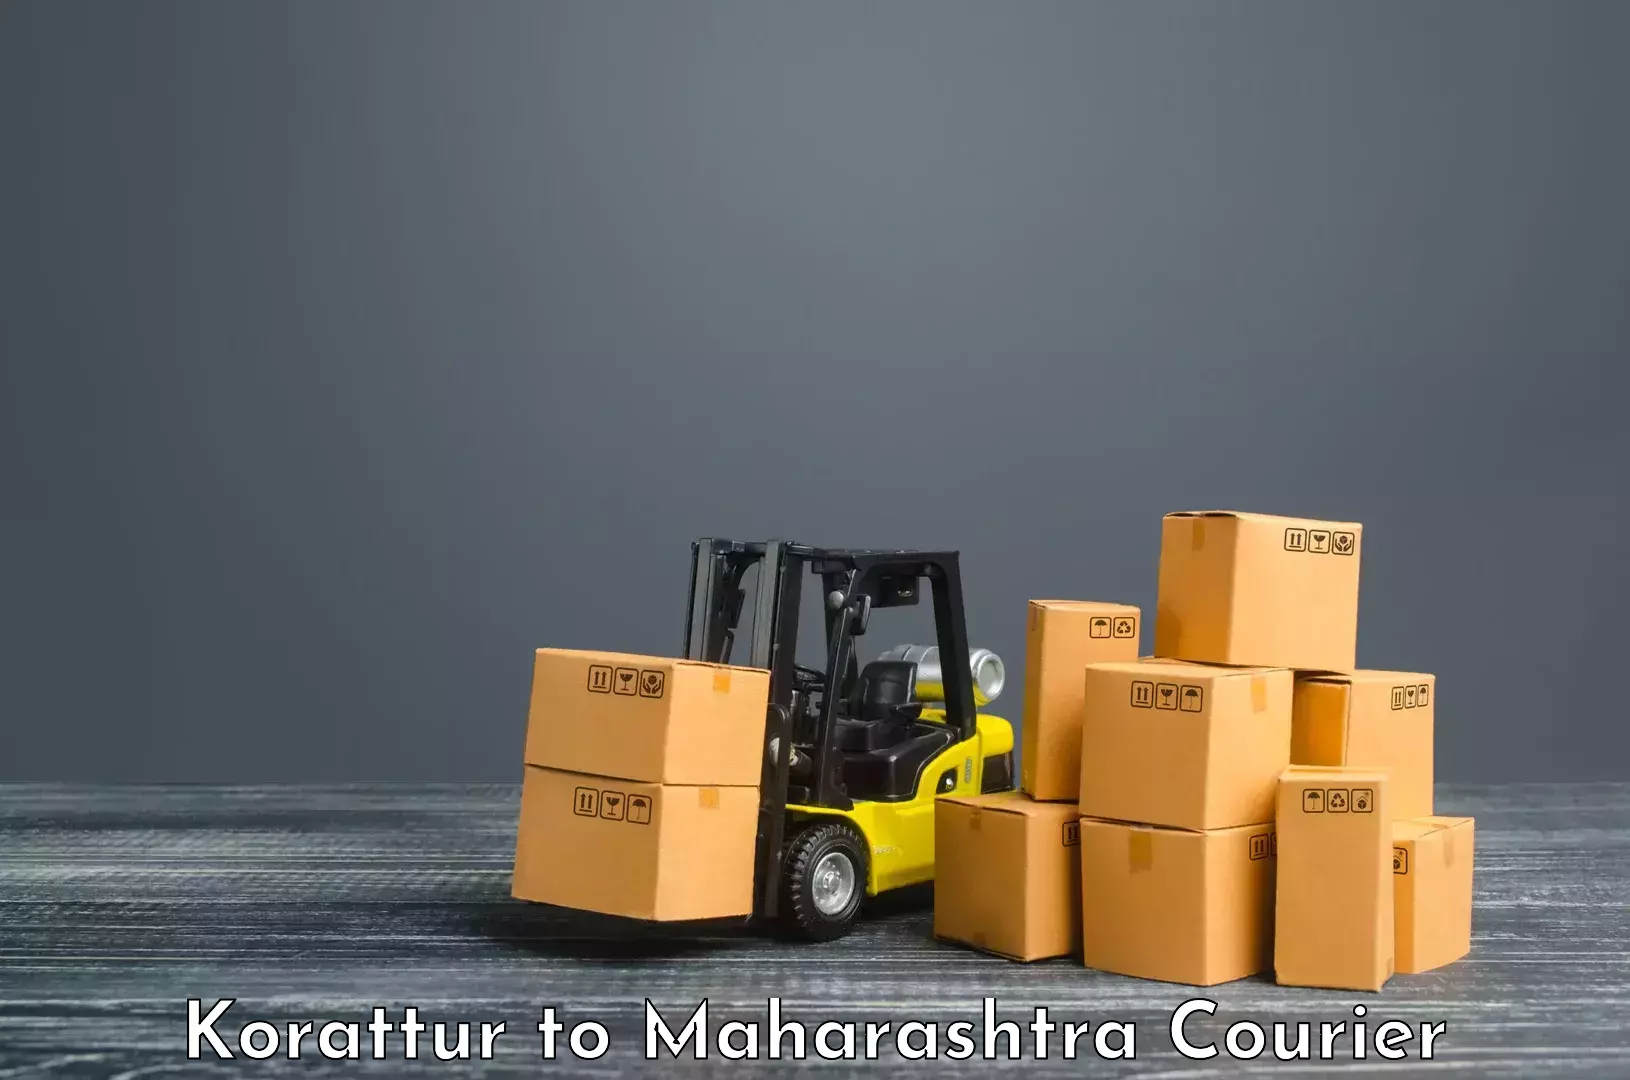 Express delivery capabilities Korattur to Raigarh Maharashtra